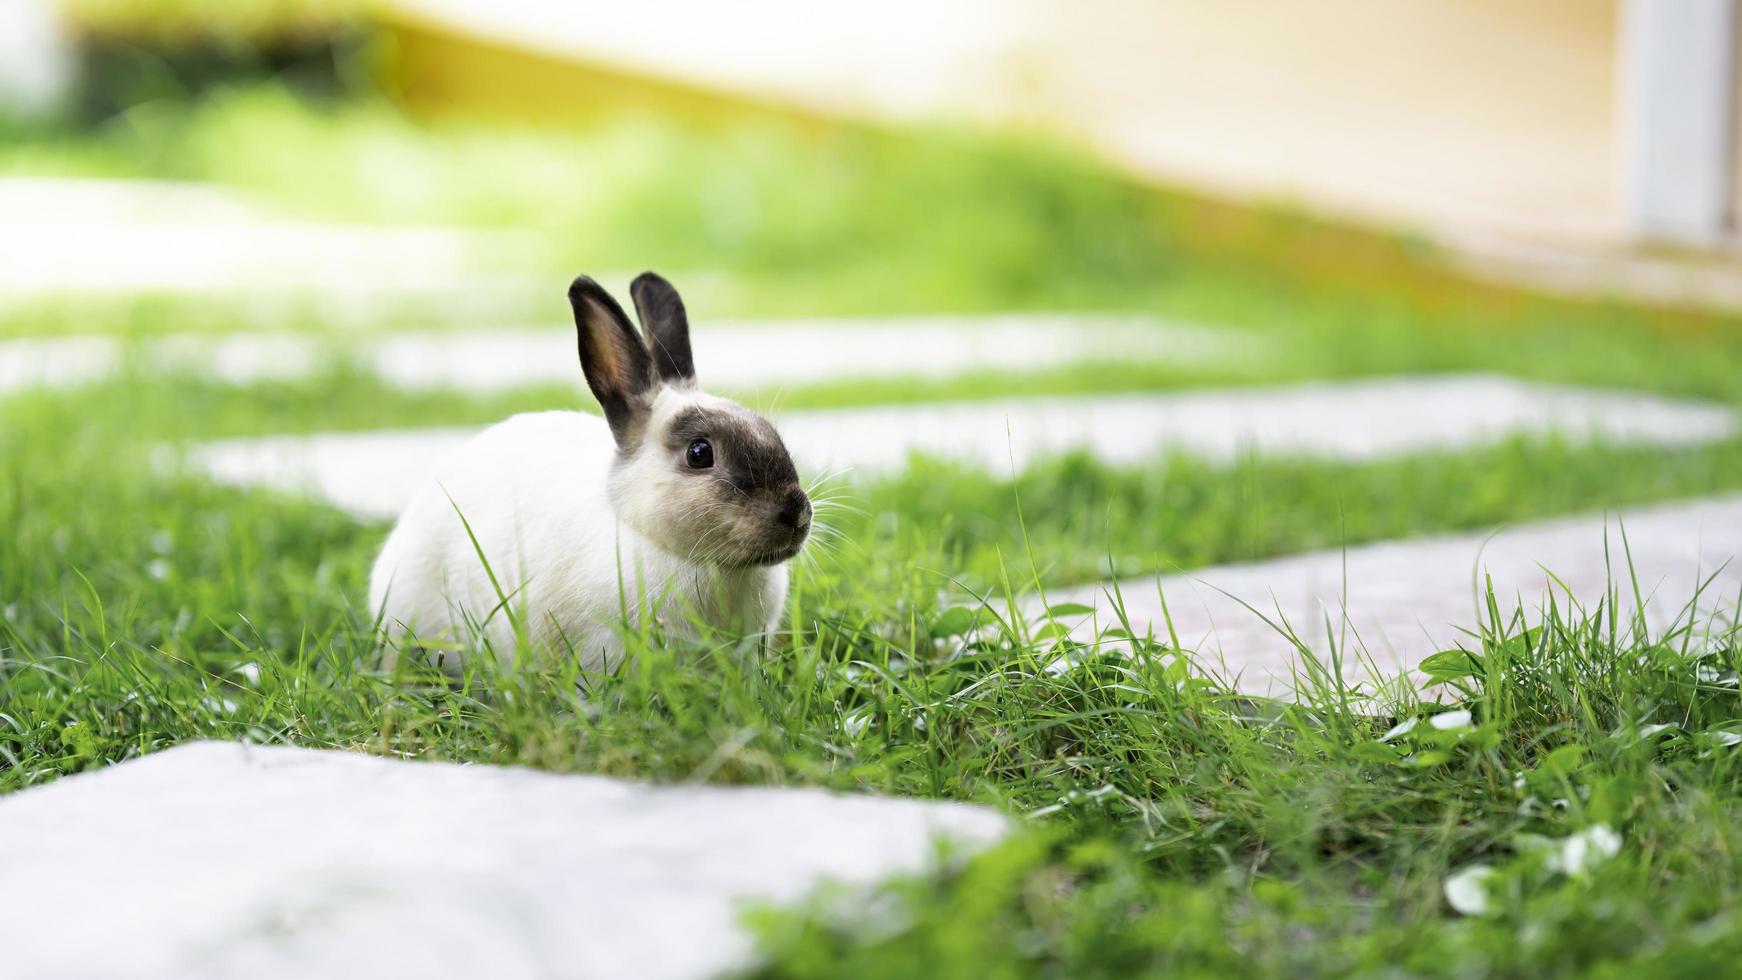 klein konijn op groen gras in de zomer of lente. foto